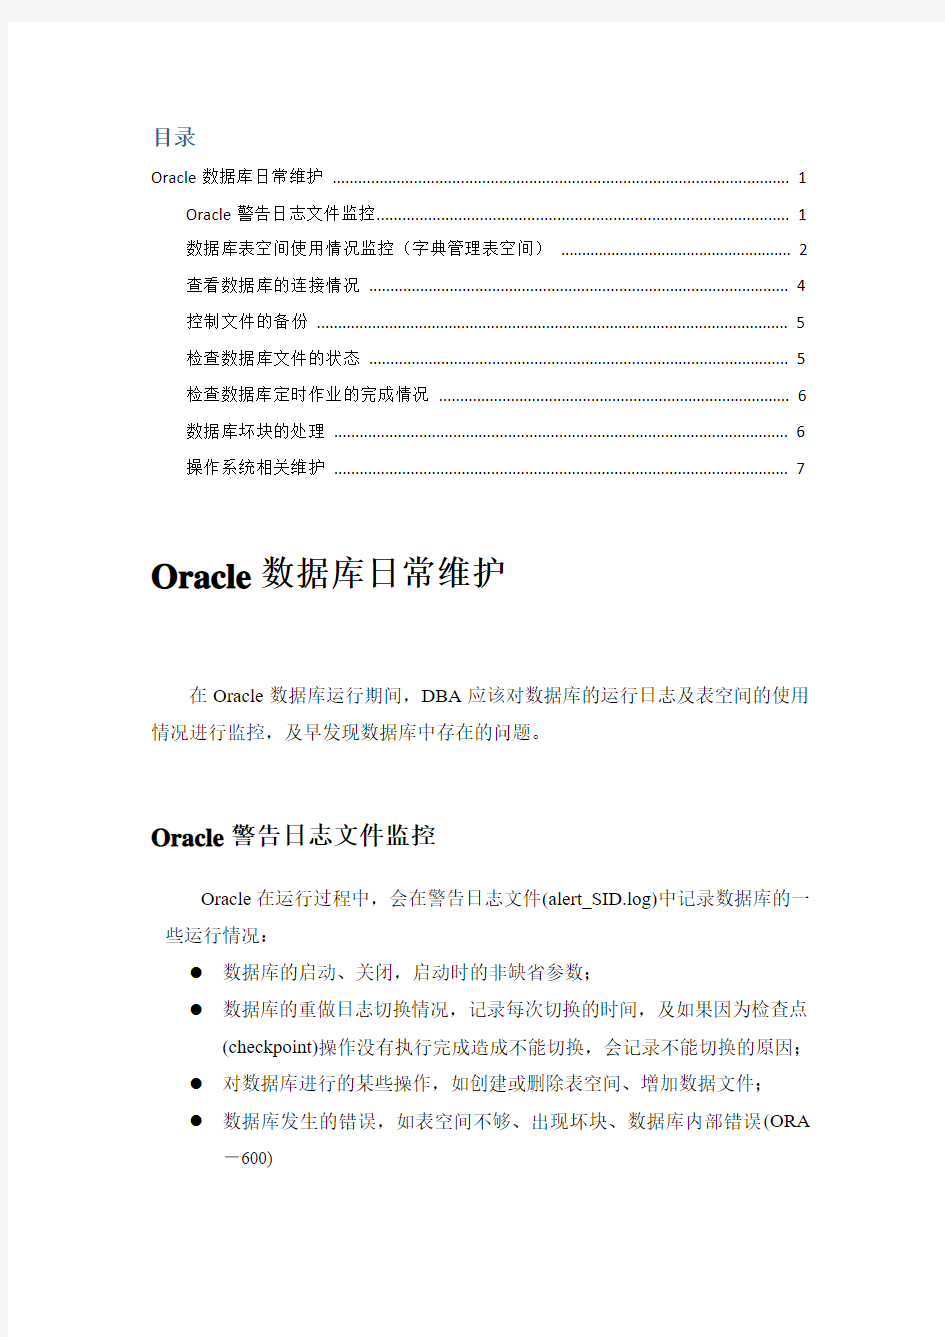 Oracle日常维护手册